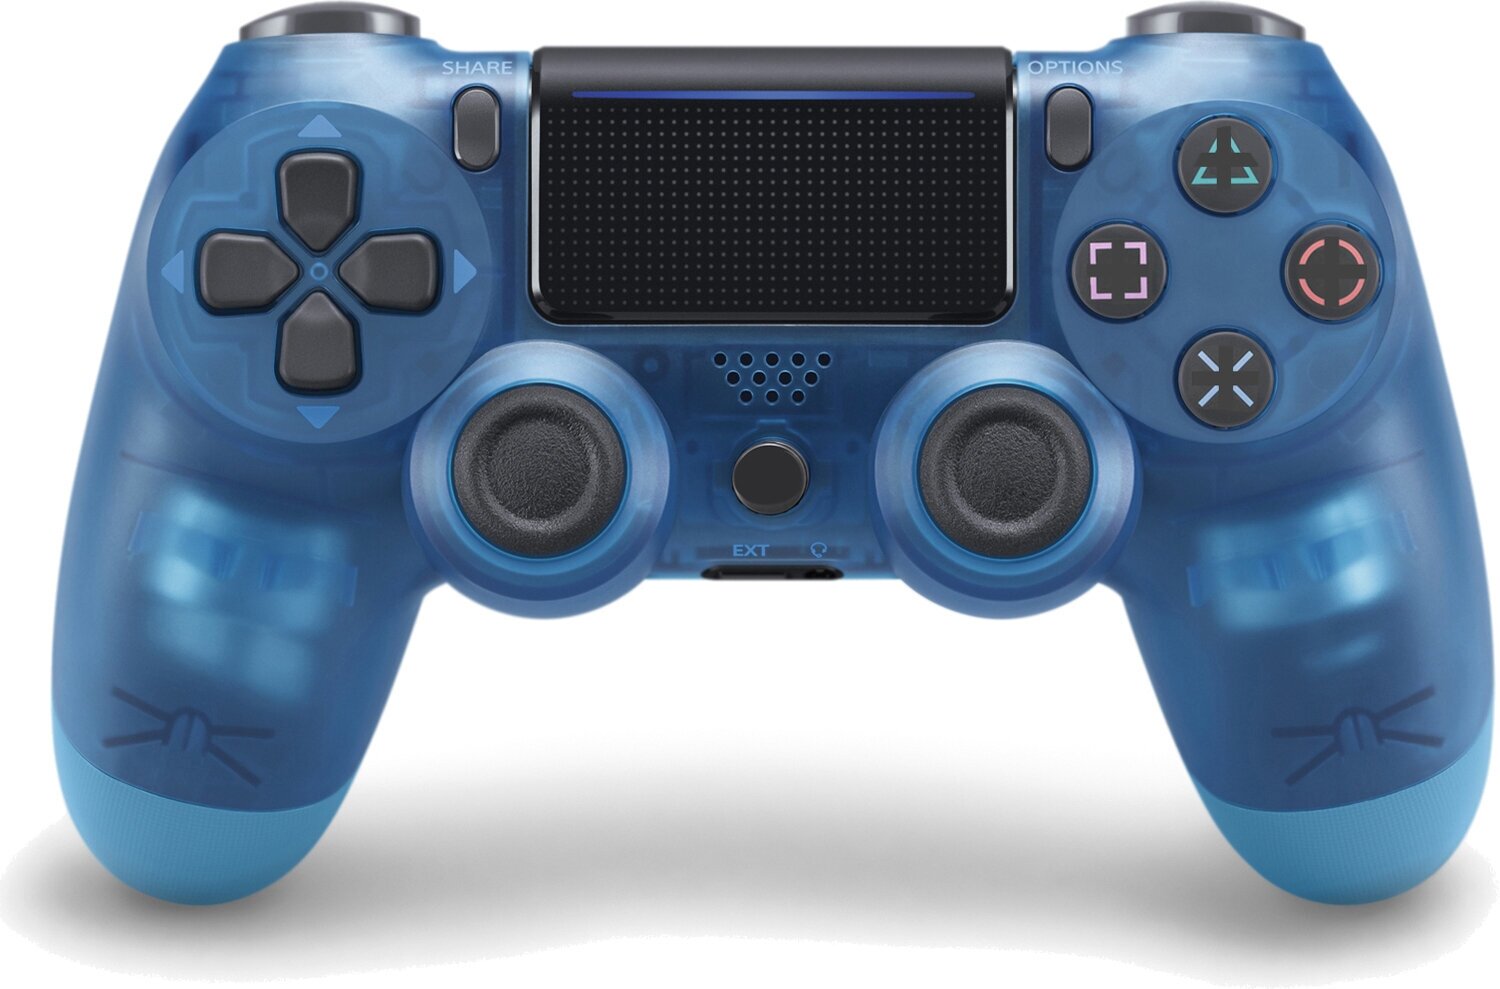 Беспроводной геймпад для PlayStation 4, модель Transparent Blue V2. Джойстик совместимый с PS4, PC и Mac, Apple, Android